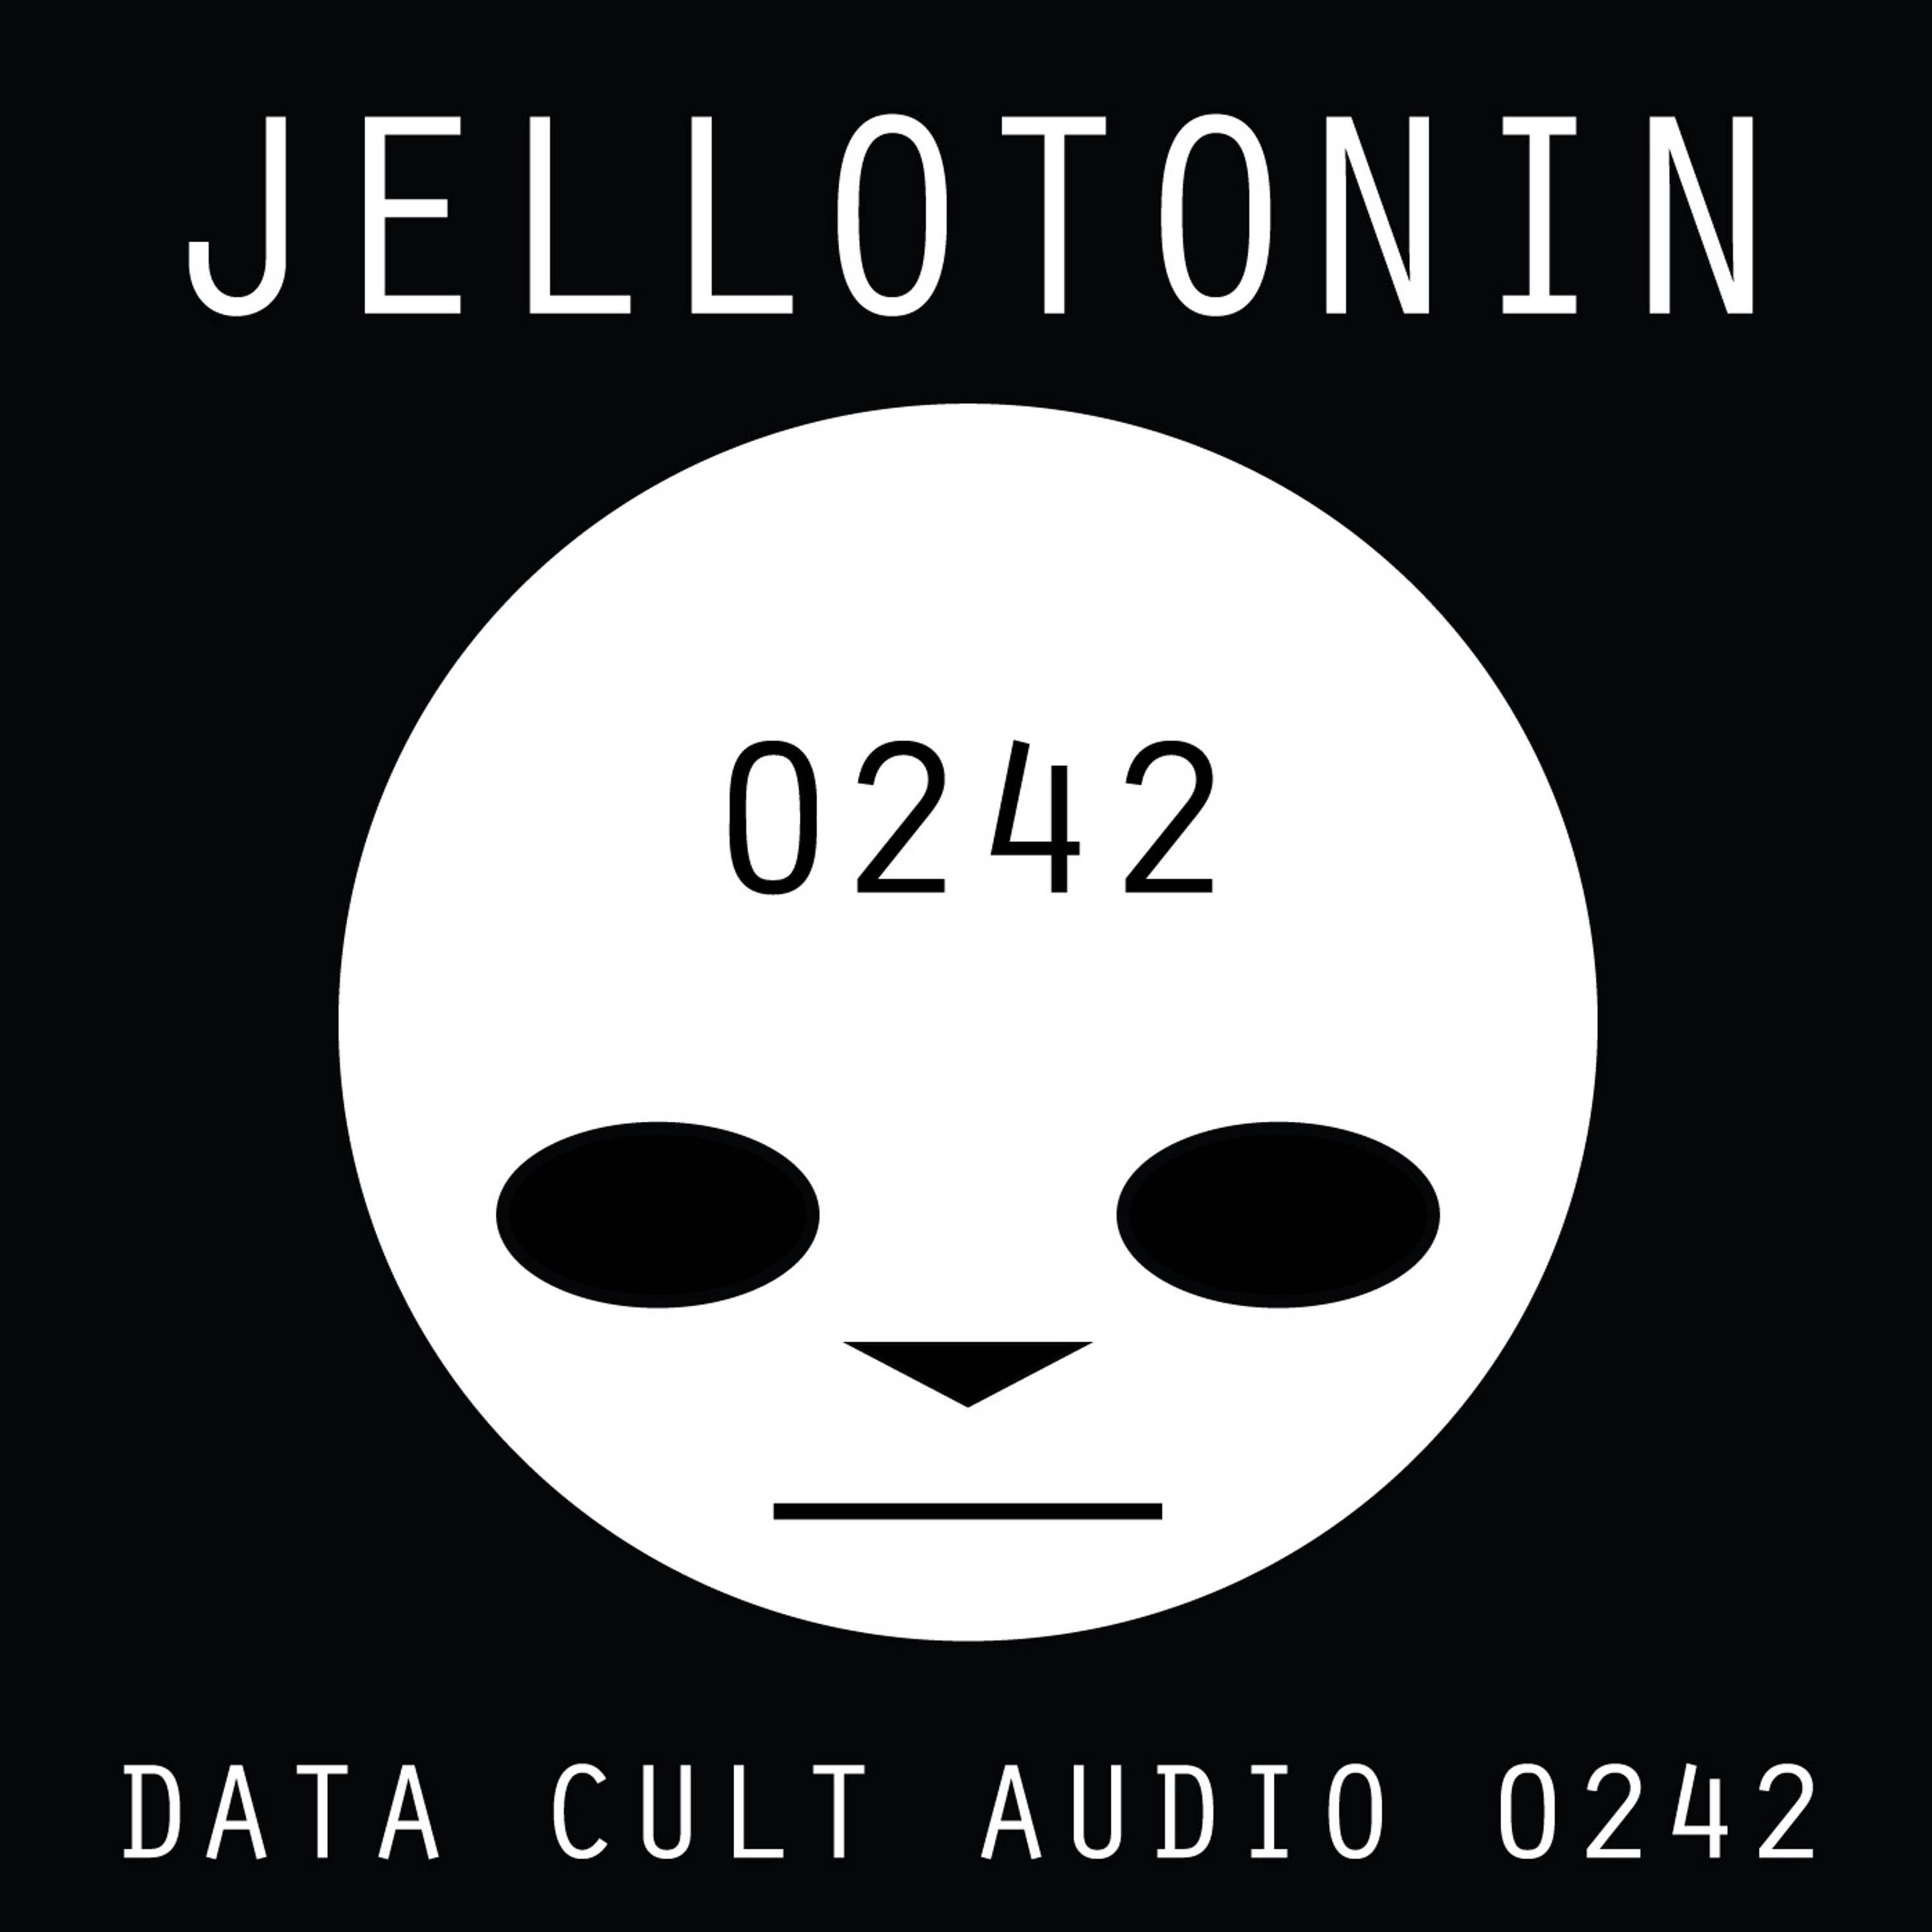 Data Cult Audio 0242 - Jellotonin